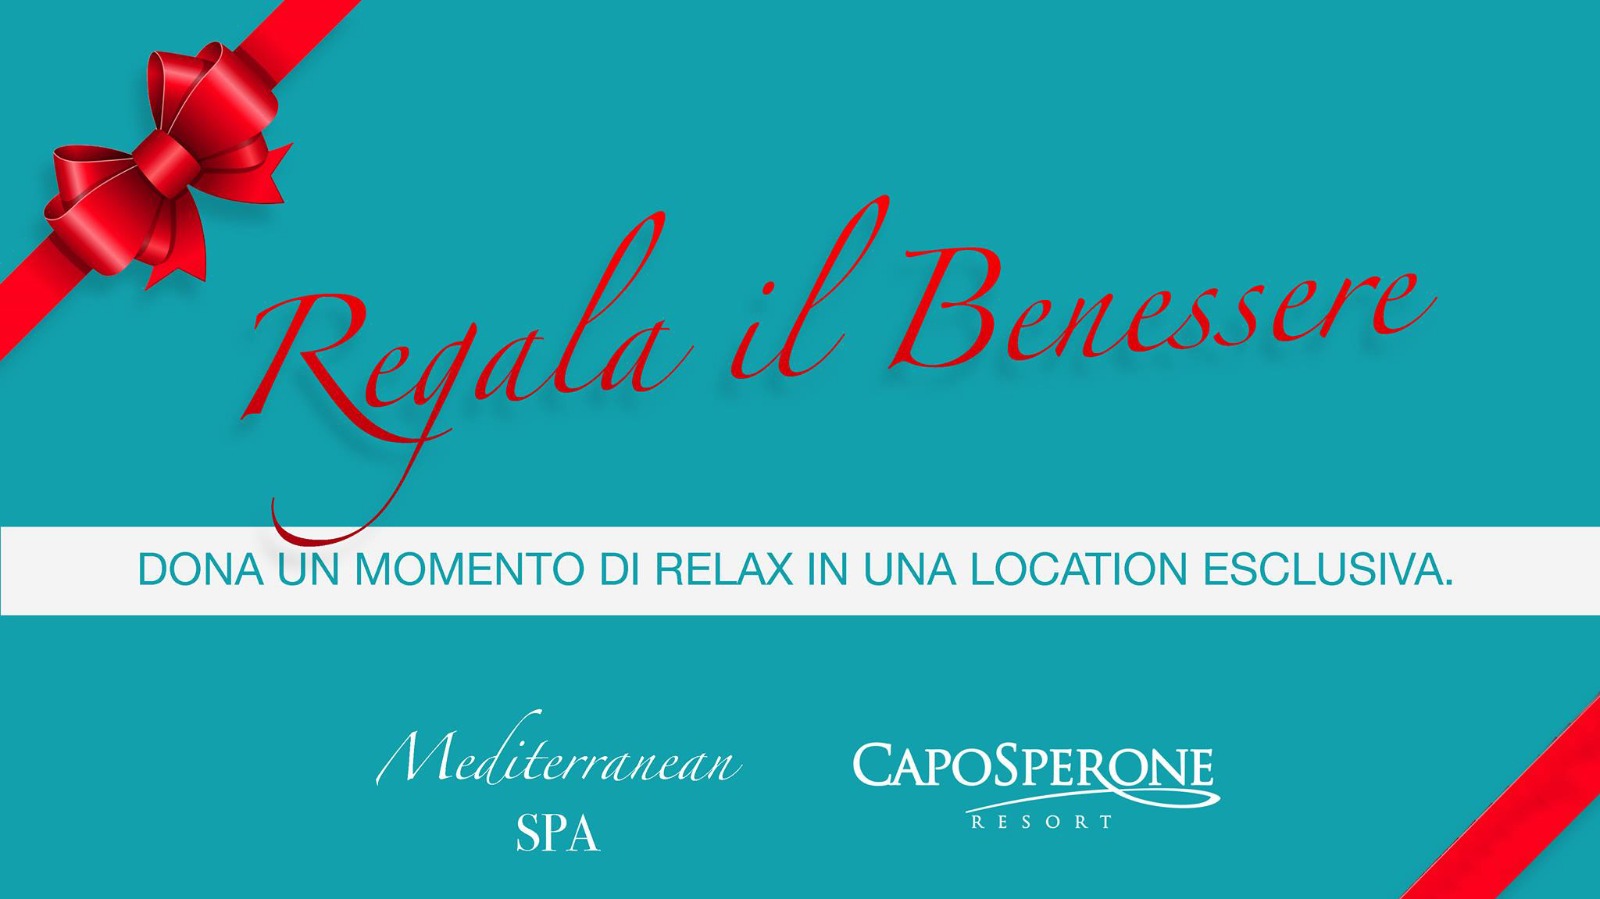 CapoSperone Resort&Spa Regala Il Benessere